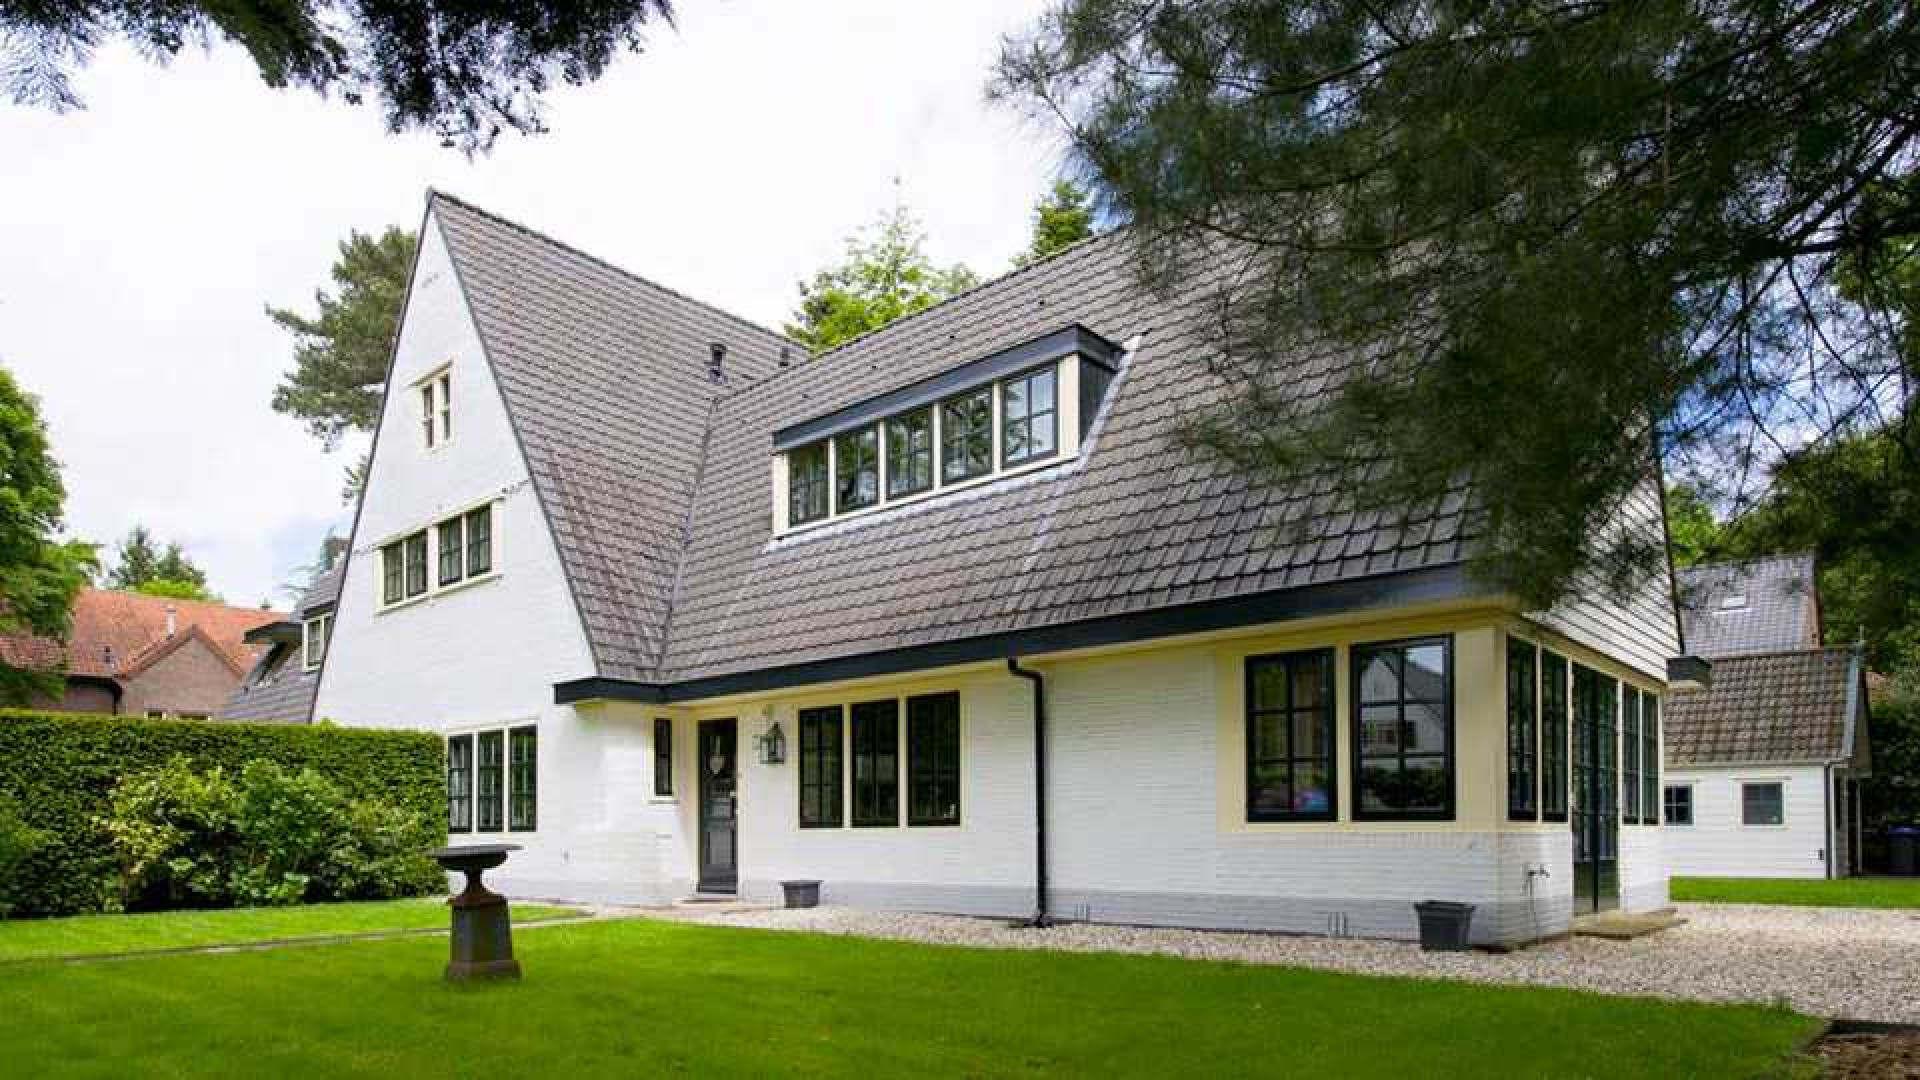 Villa waar Koen Everink werd omgebracht in diepste geheim verkocht. Zie foto's 12